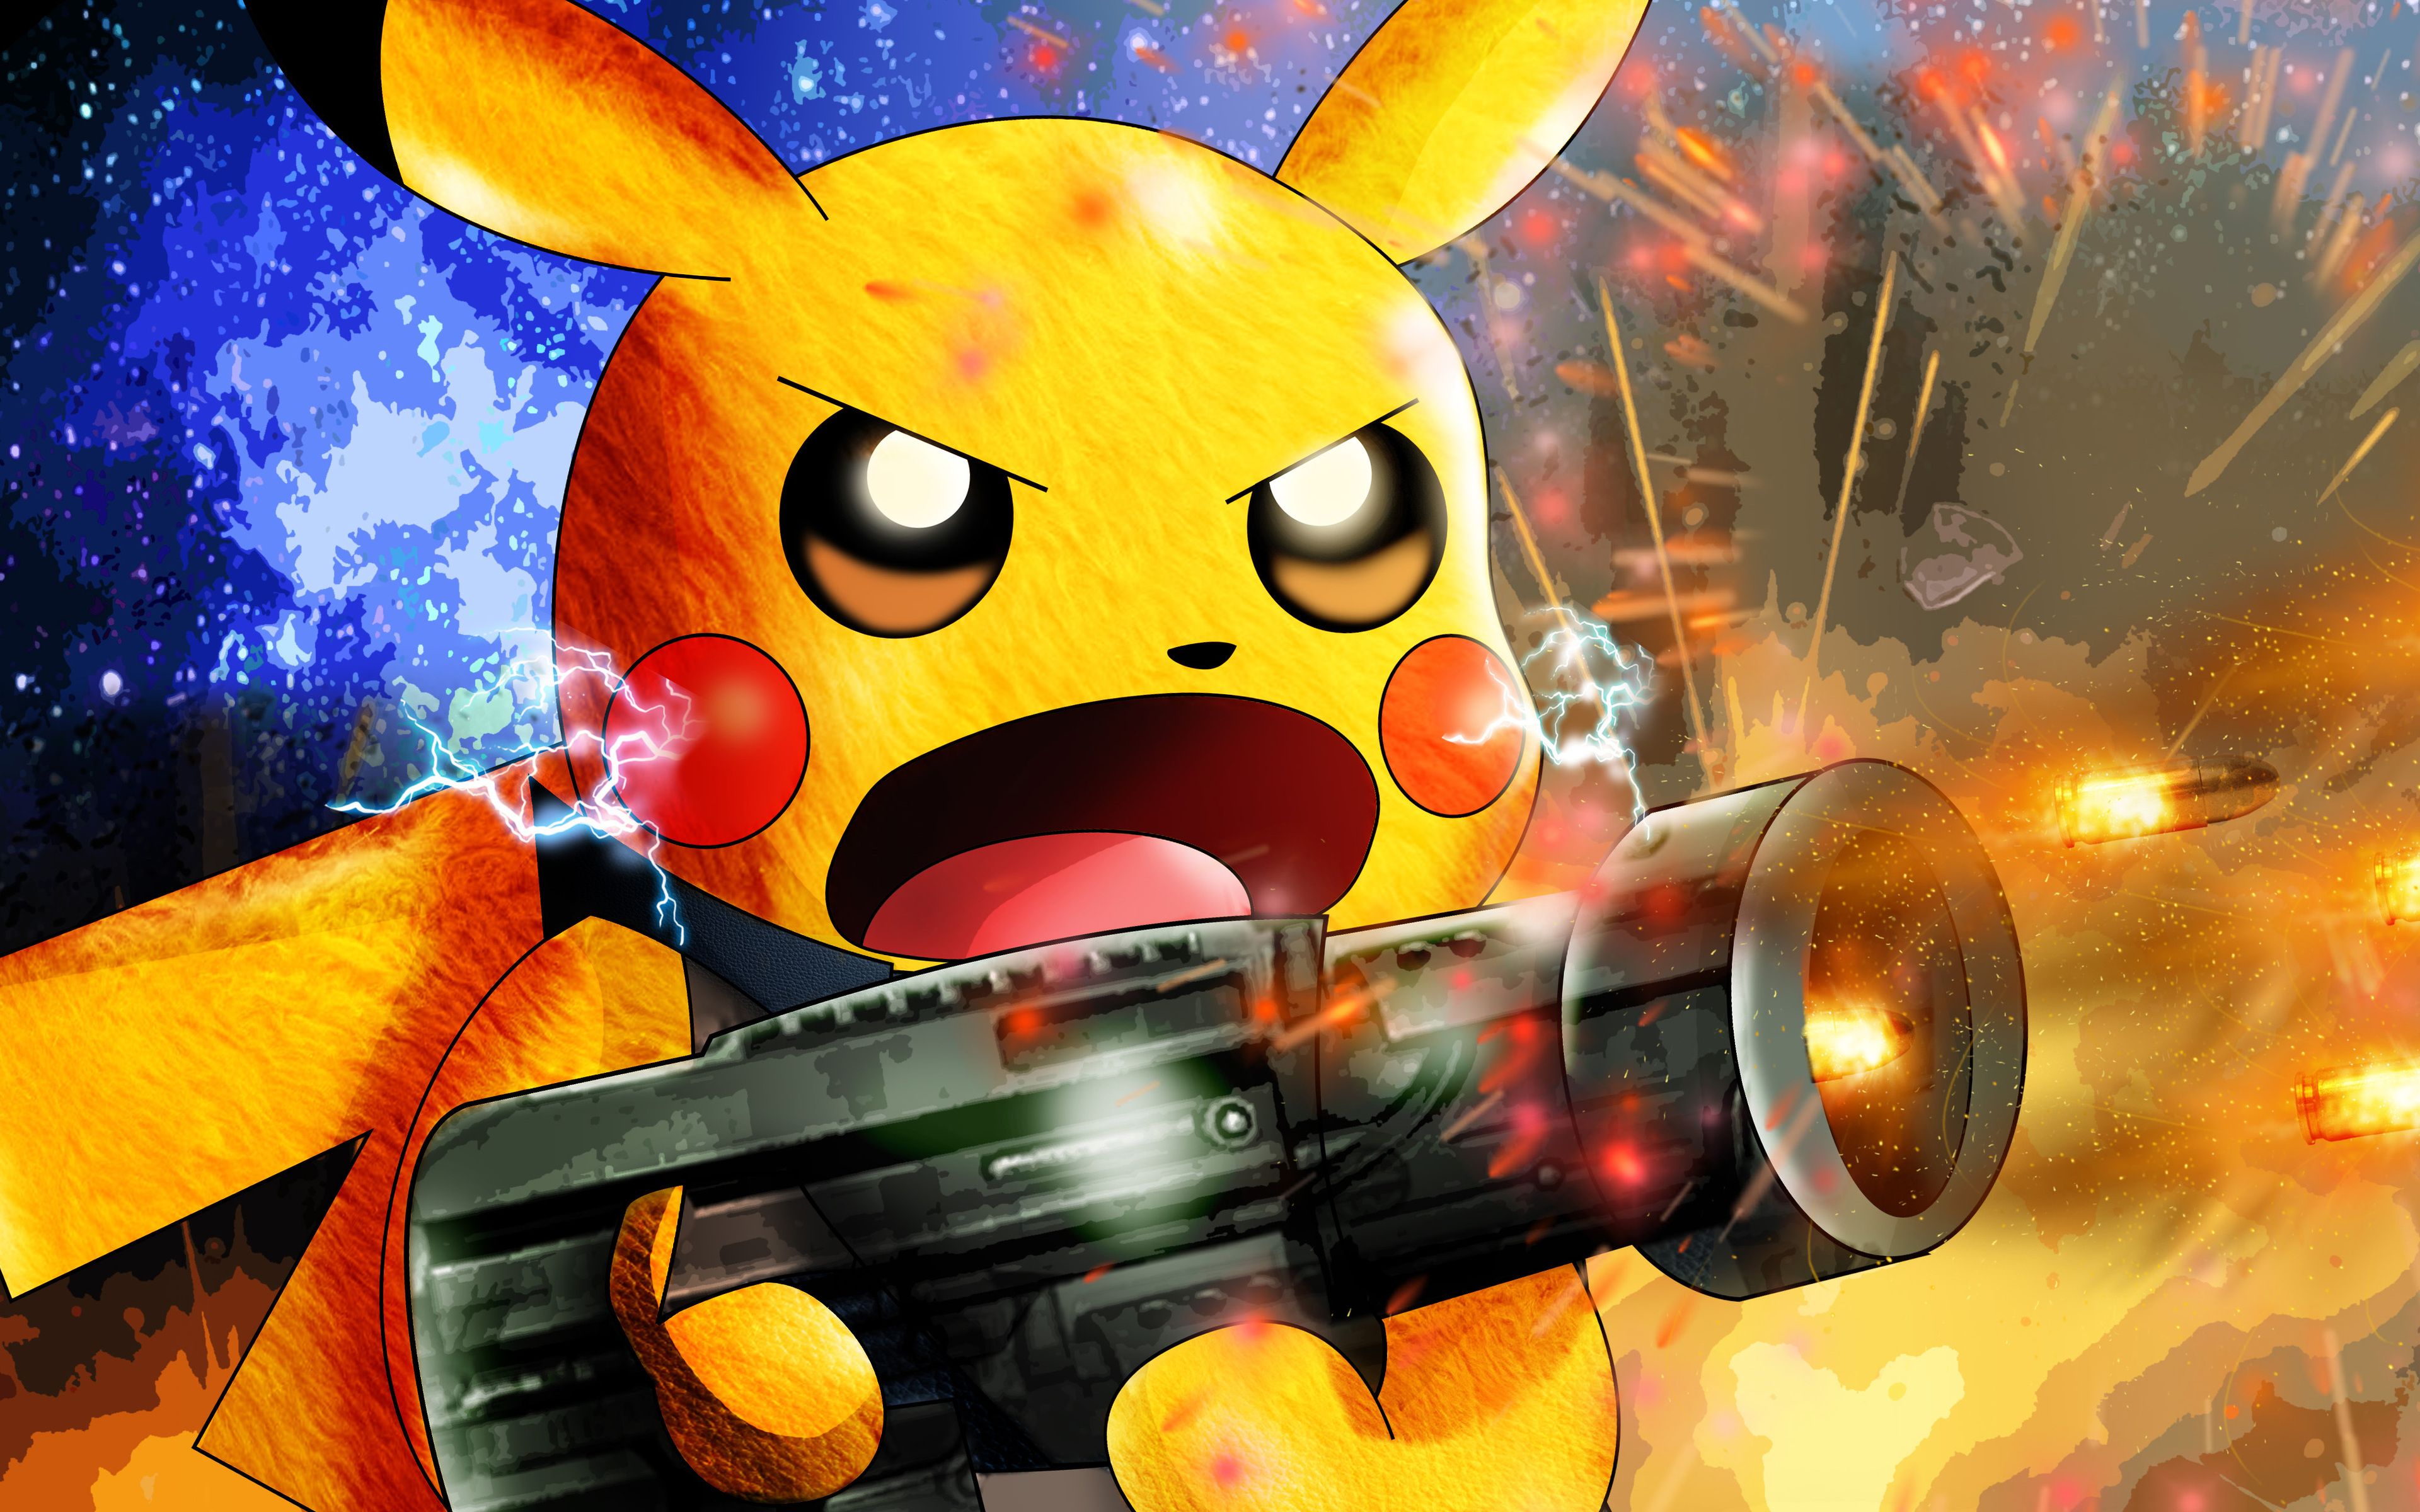 Download wallpaper 4k, Pikachu, gun, Pokemon, chubby rodent